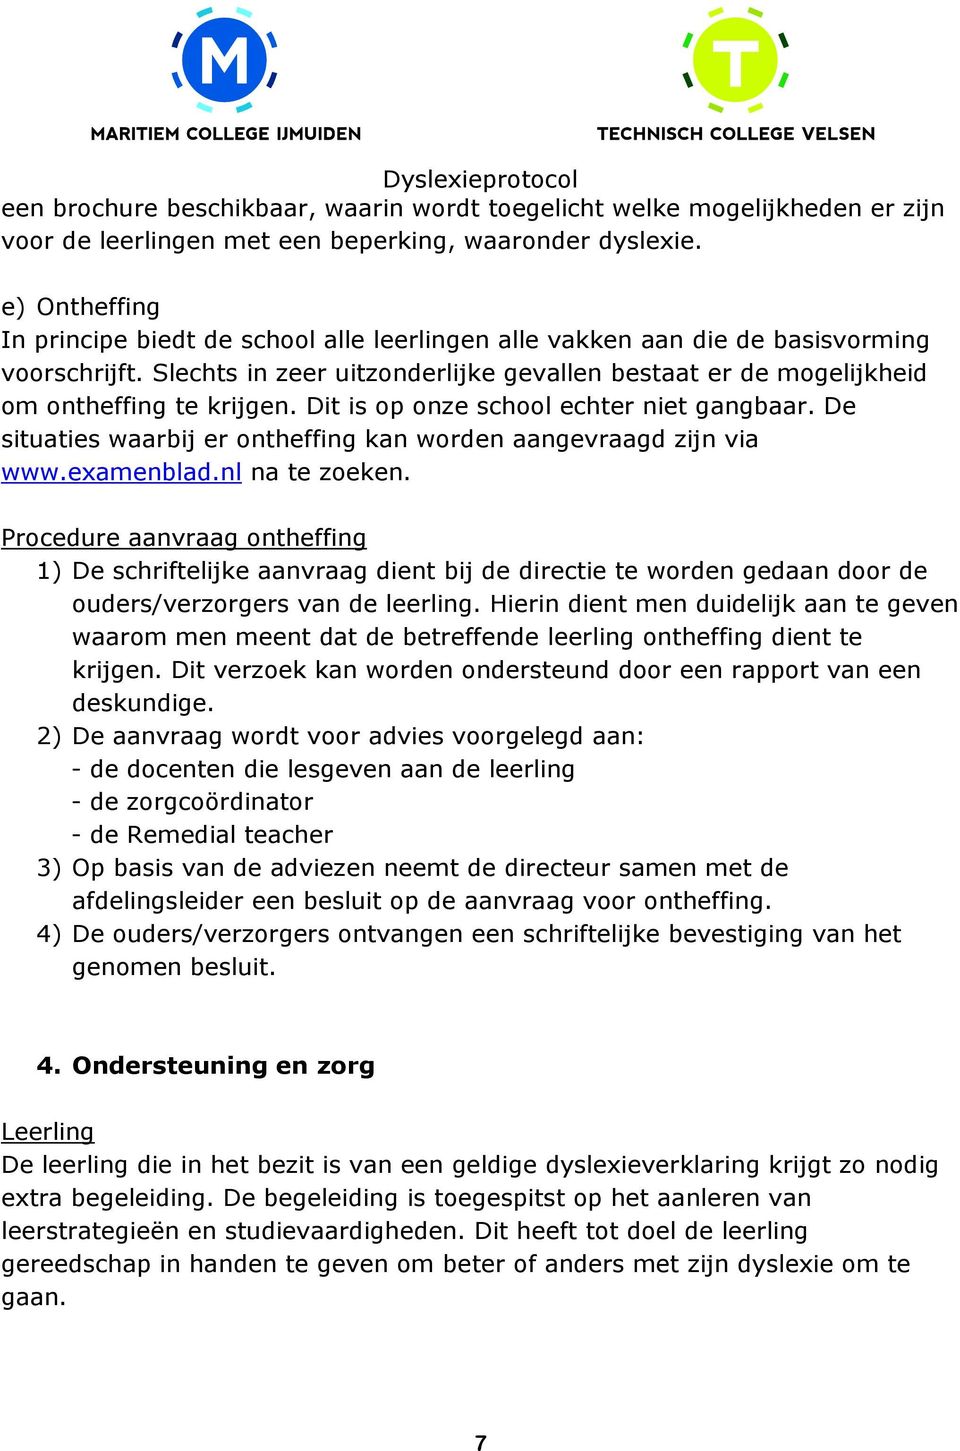 Dit is op onze school echter niet gangbaar. De situaties waarbij er ontheffing kan worden aangevraagd zijn via www.examenblad.nl na te zoeken.